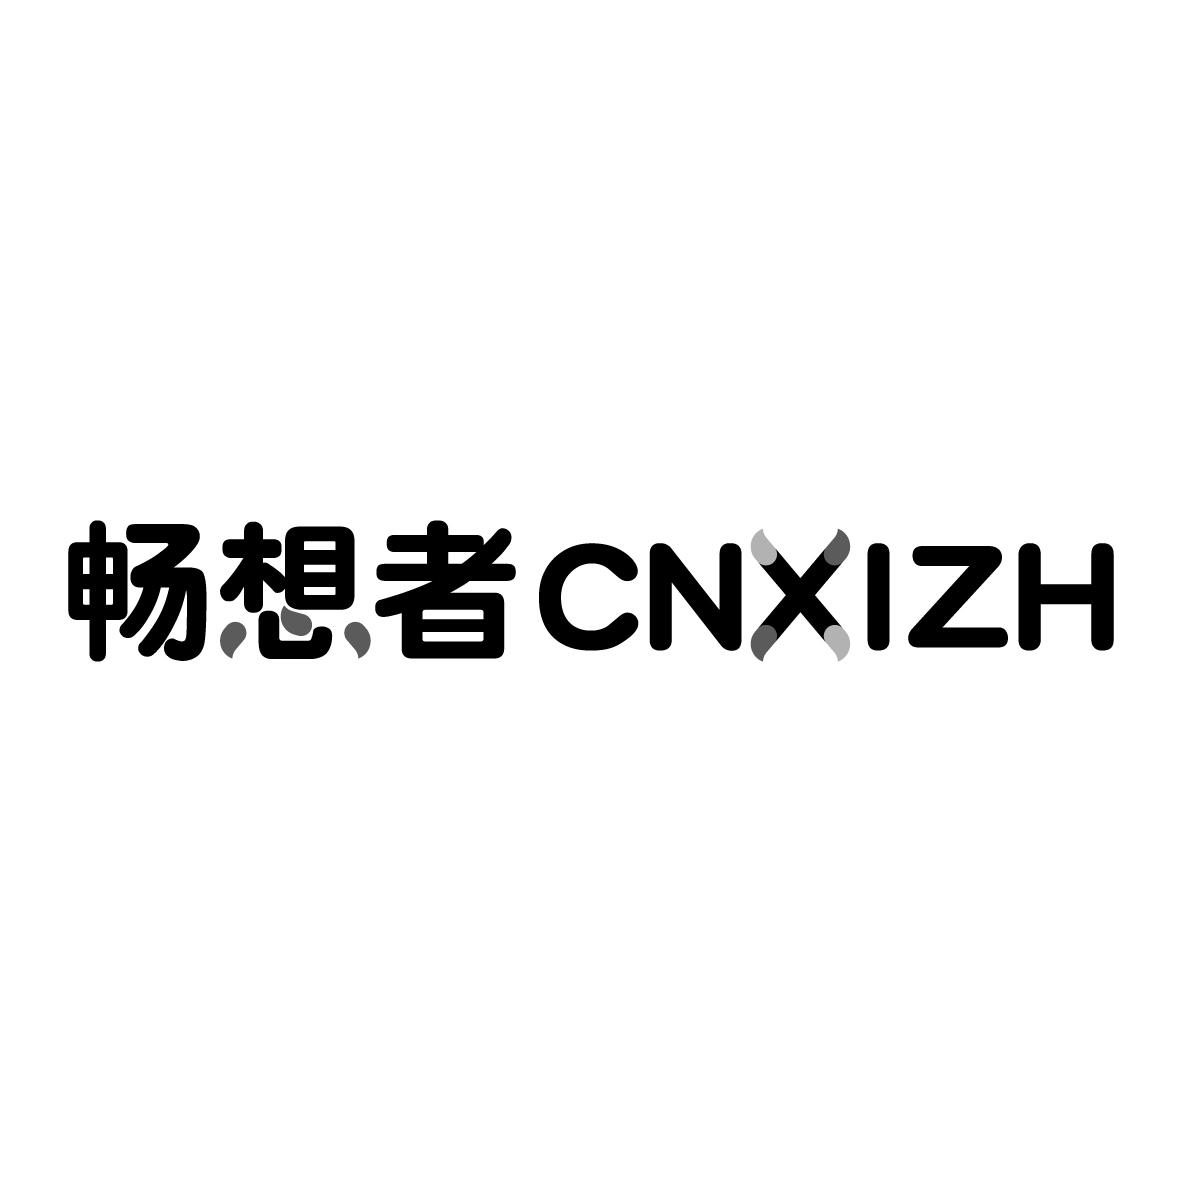 畅想者 
CNXIZH教育信息商标转让费用买卖交易流程